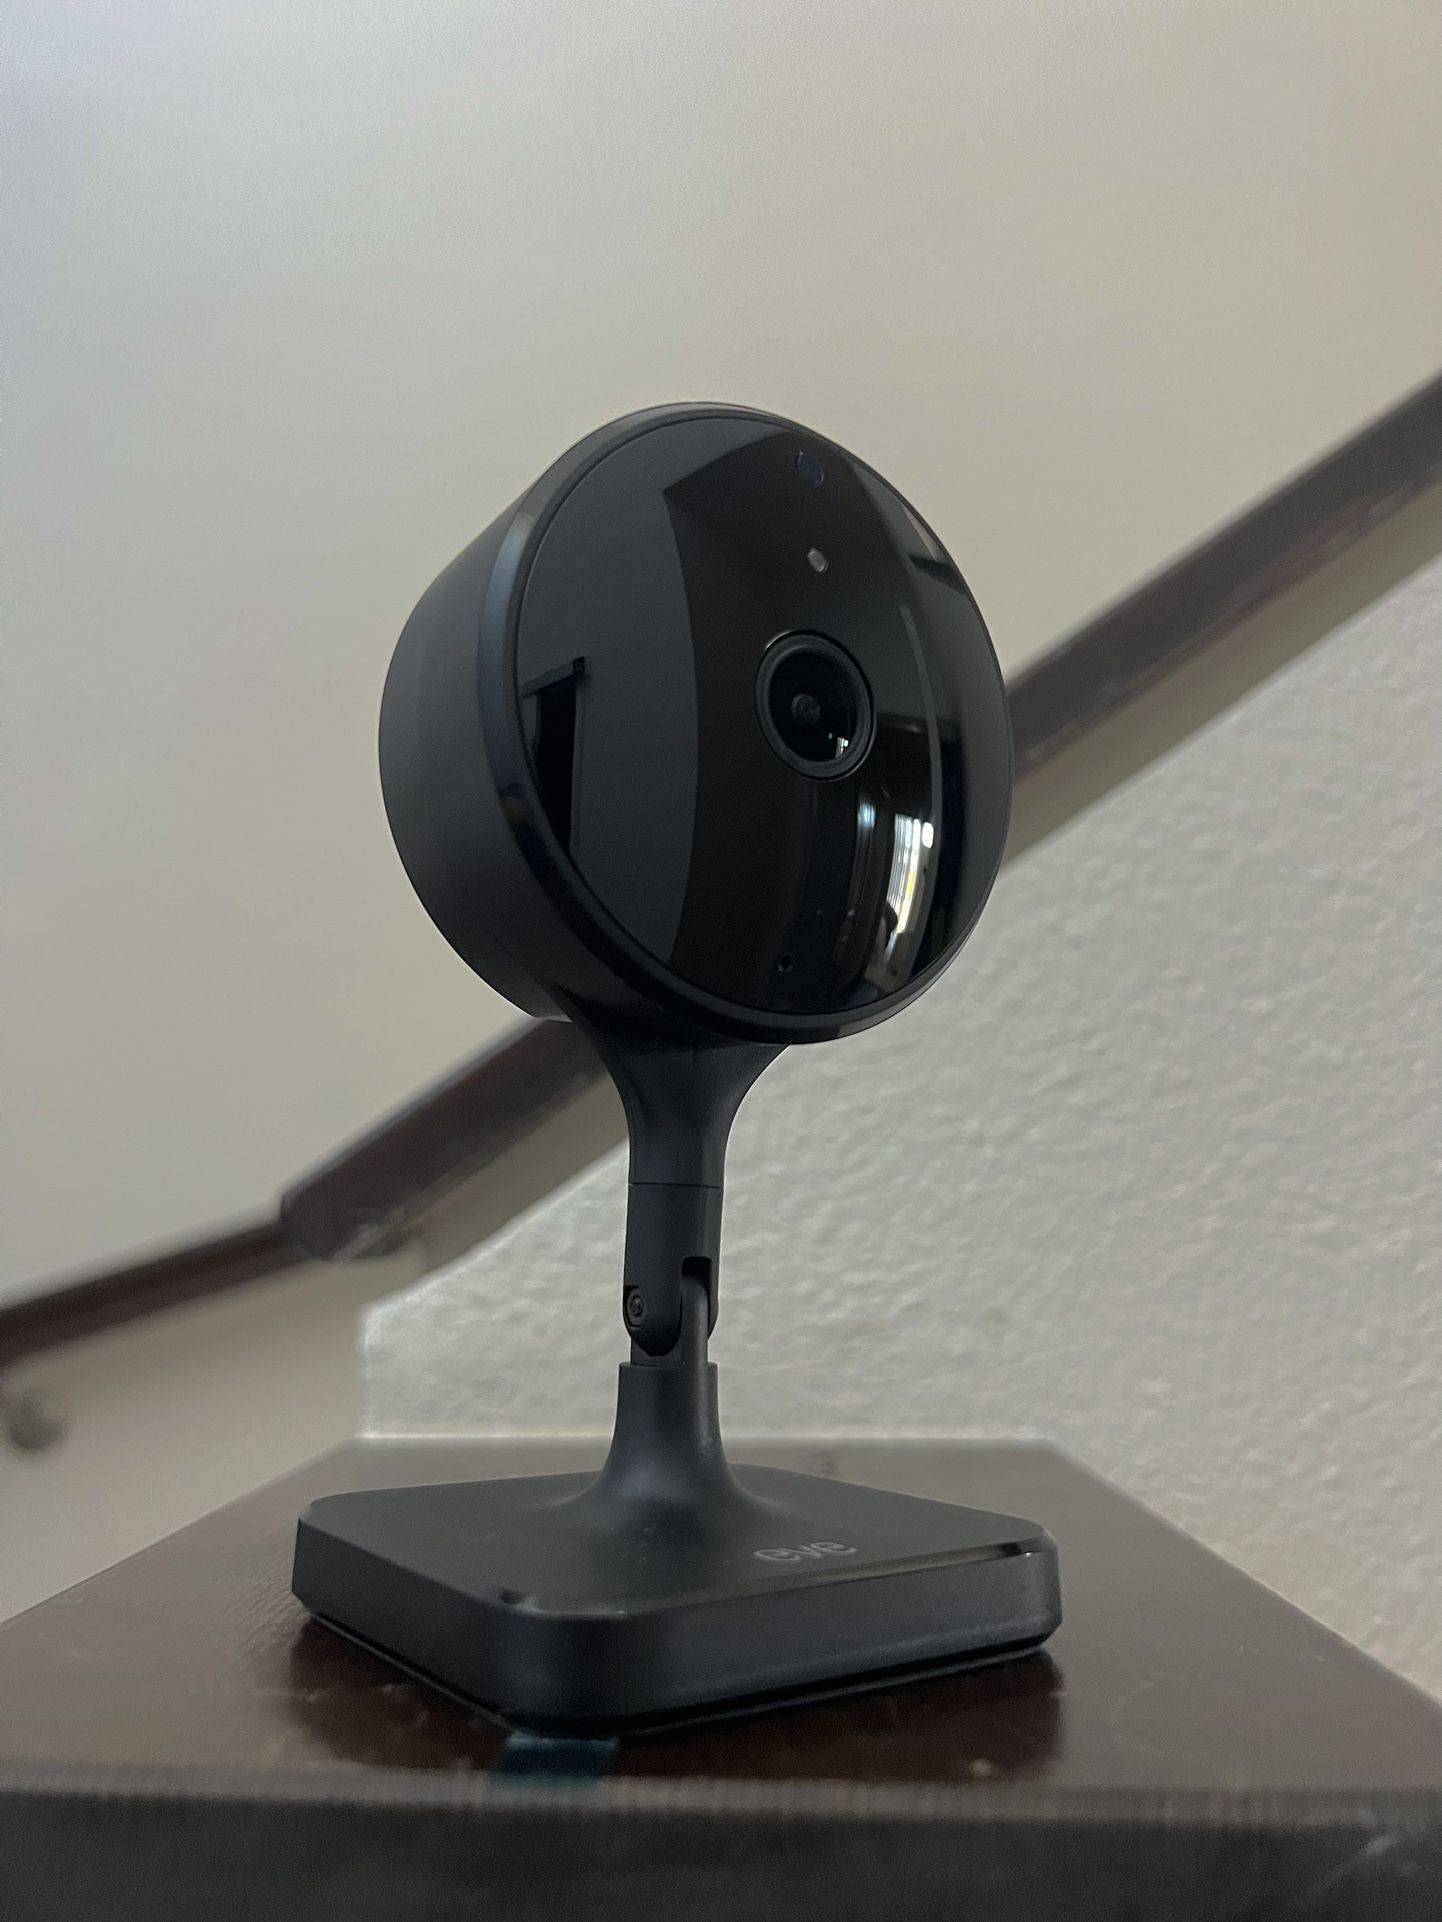 Eve Cam - New security camera